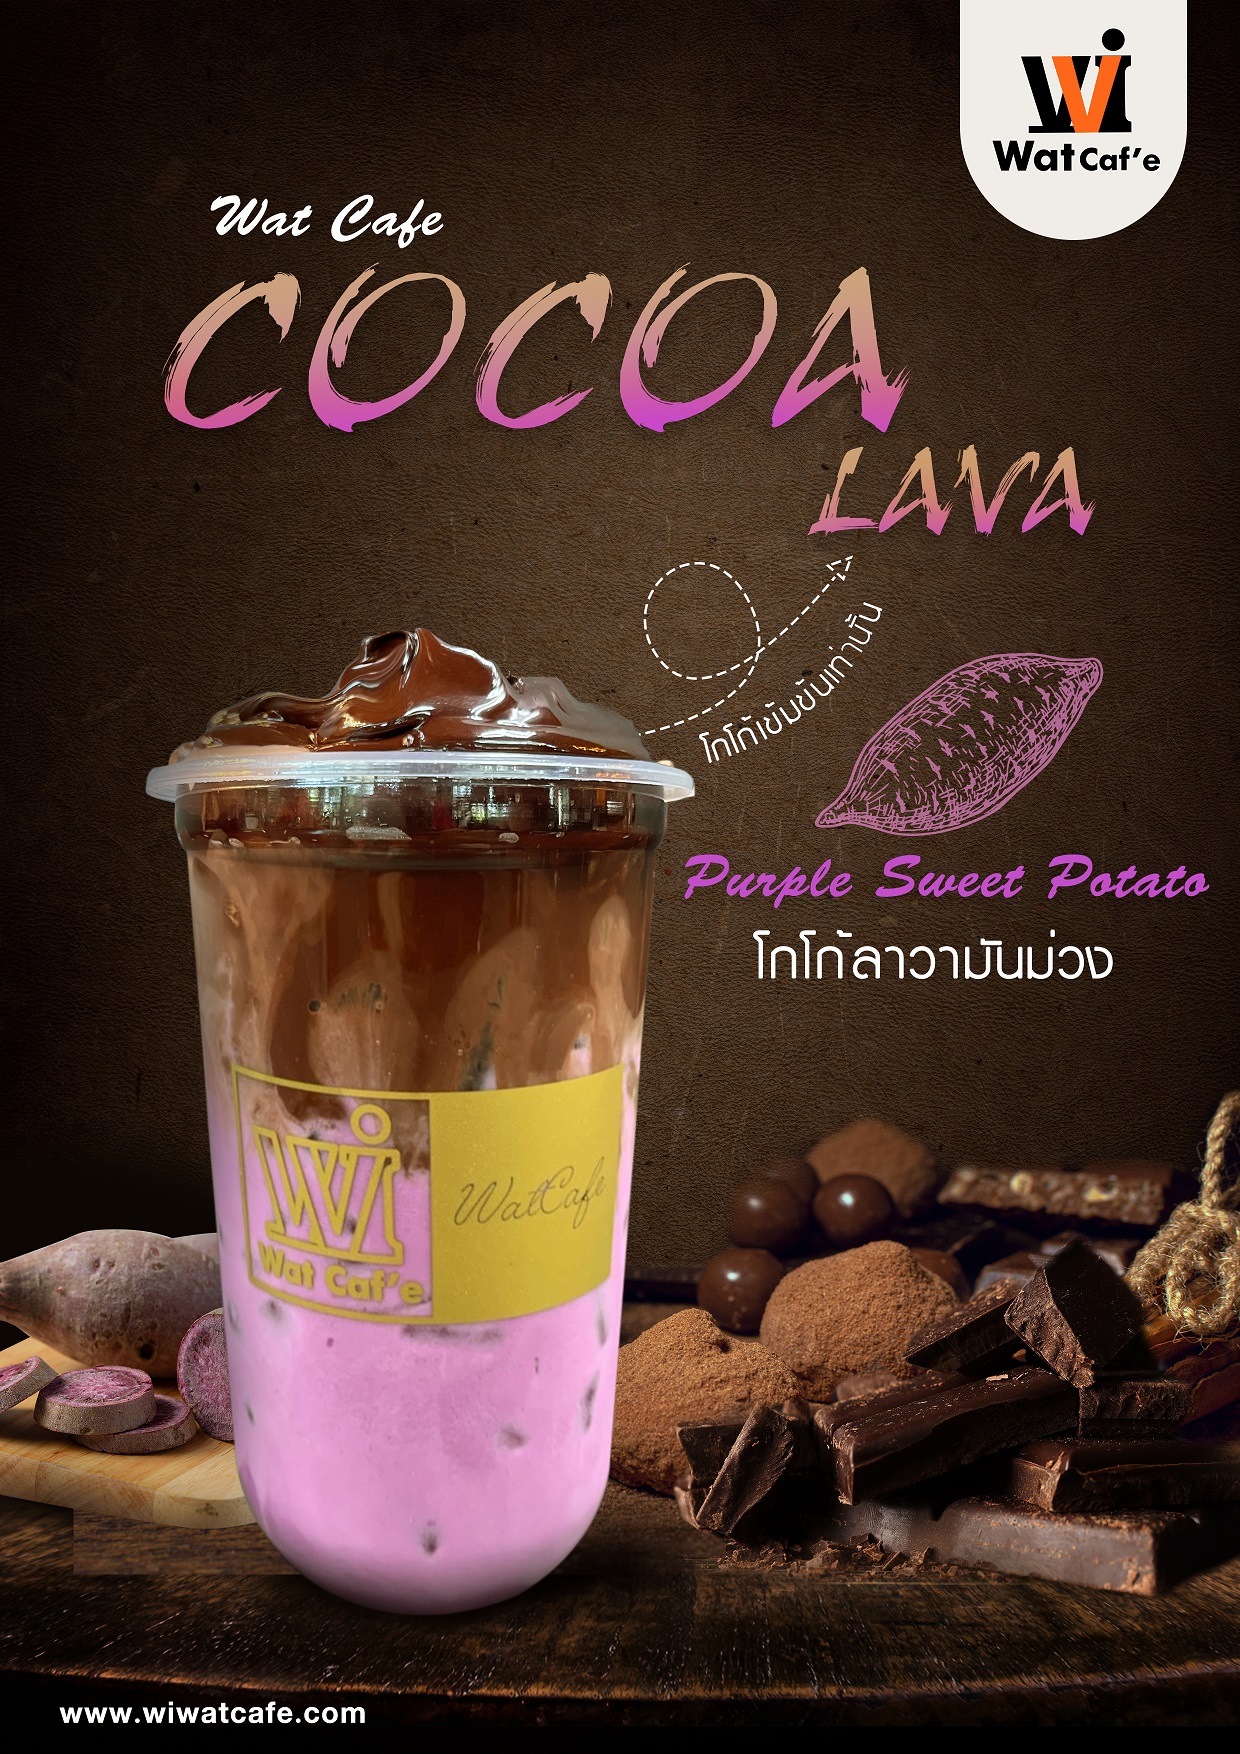 04wat cocoa lava